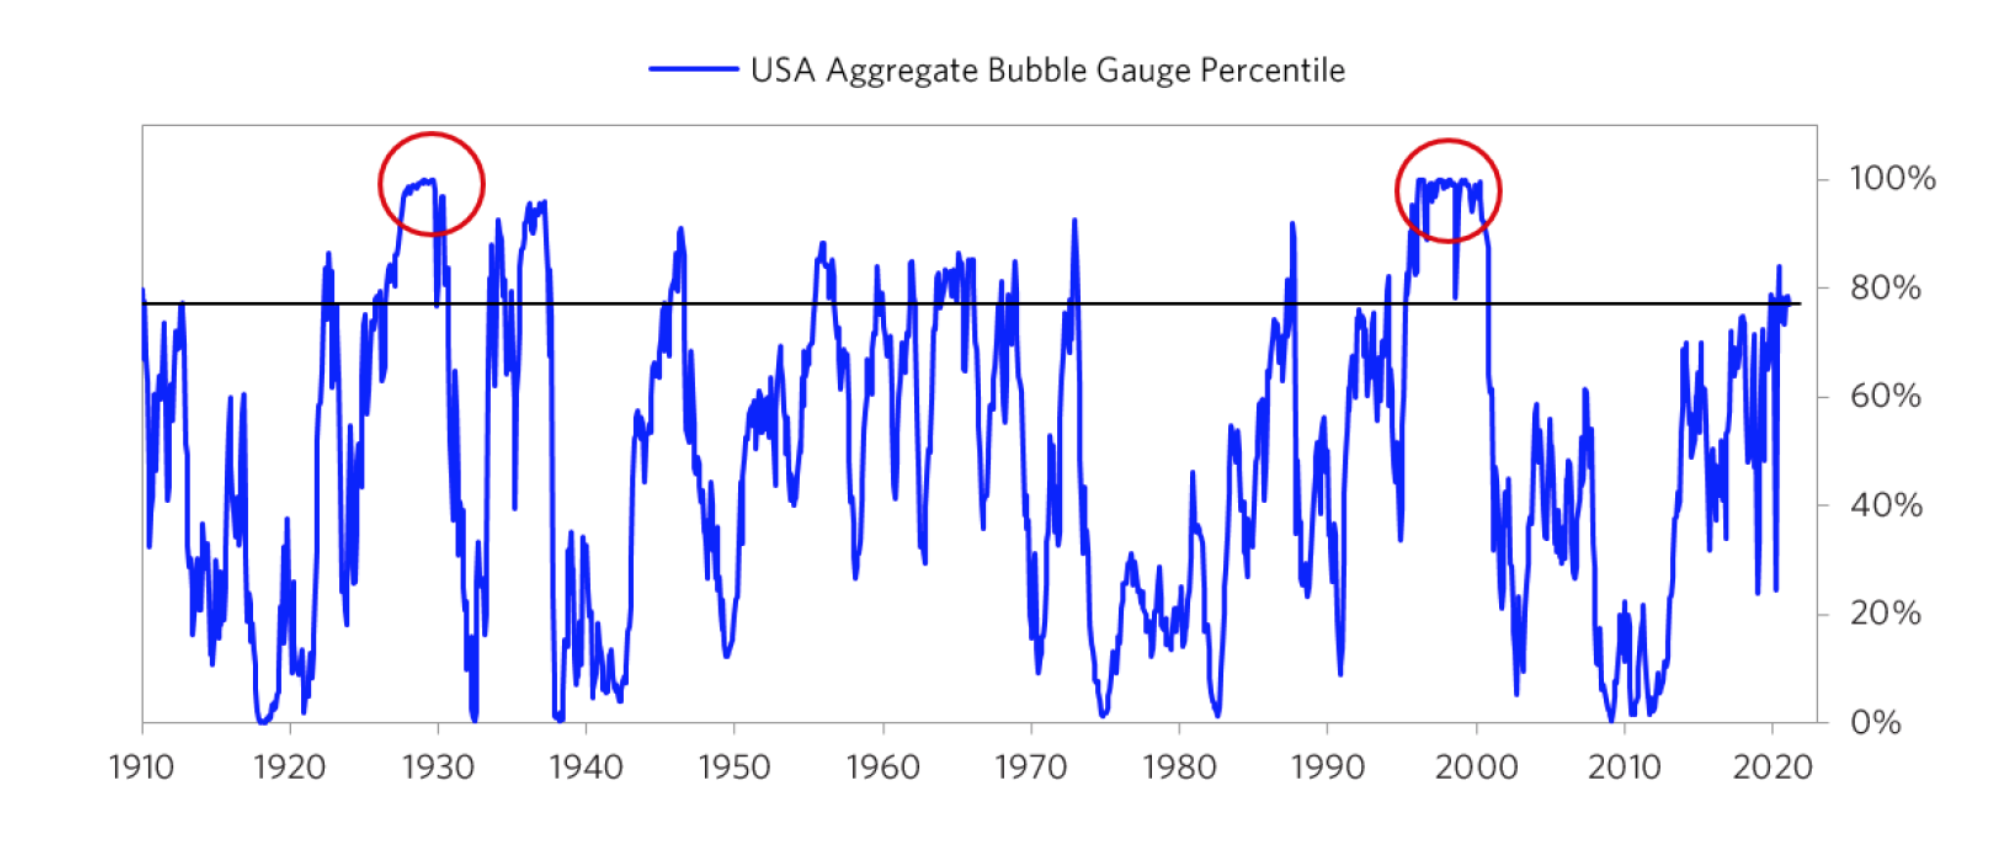 US Aggregate Bubble Gauge Percentile.